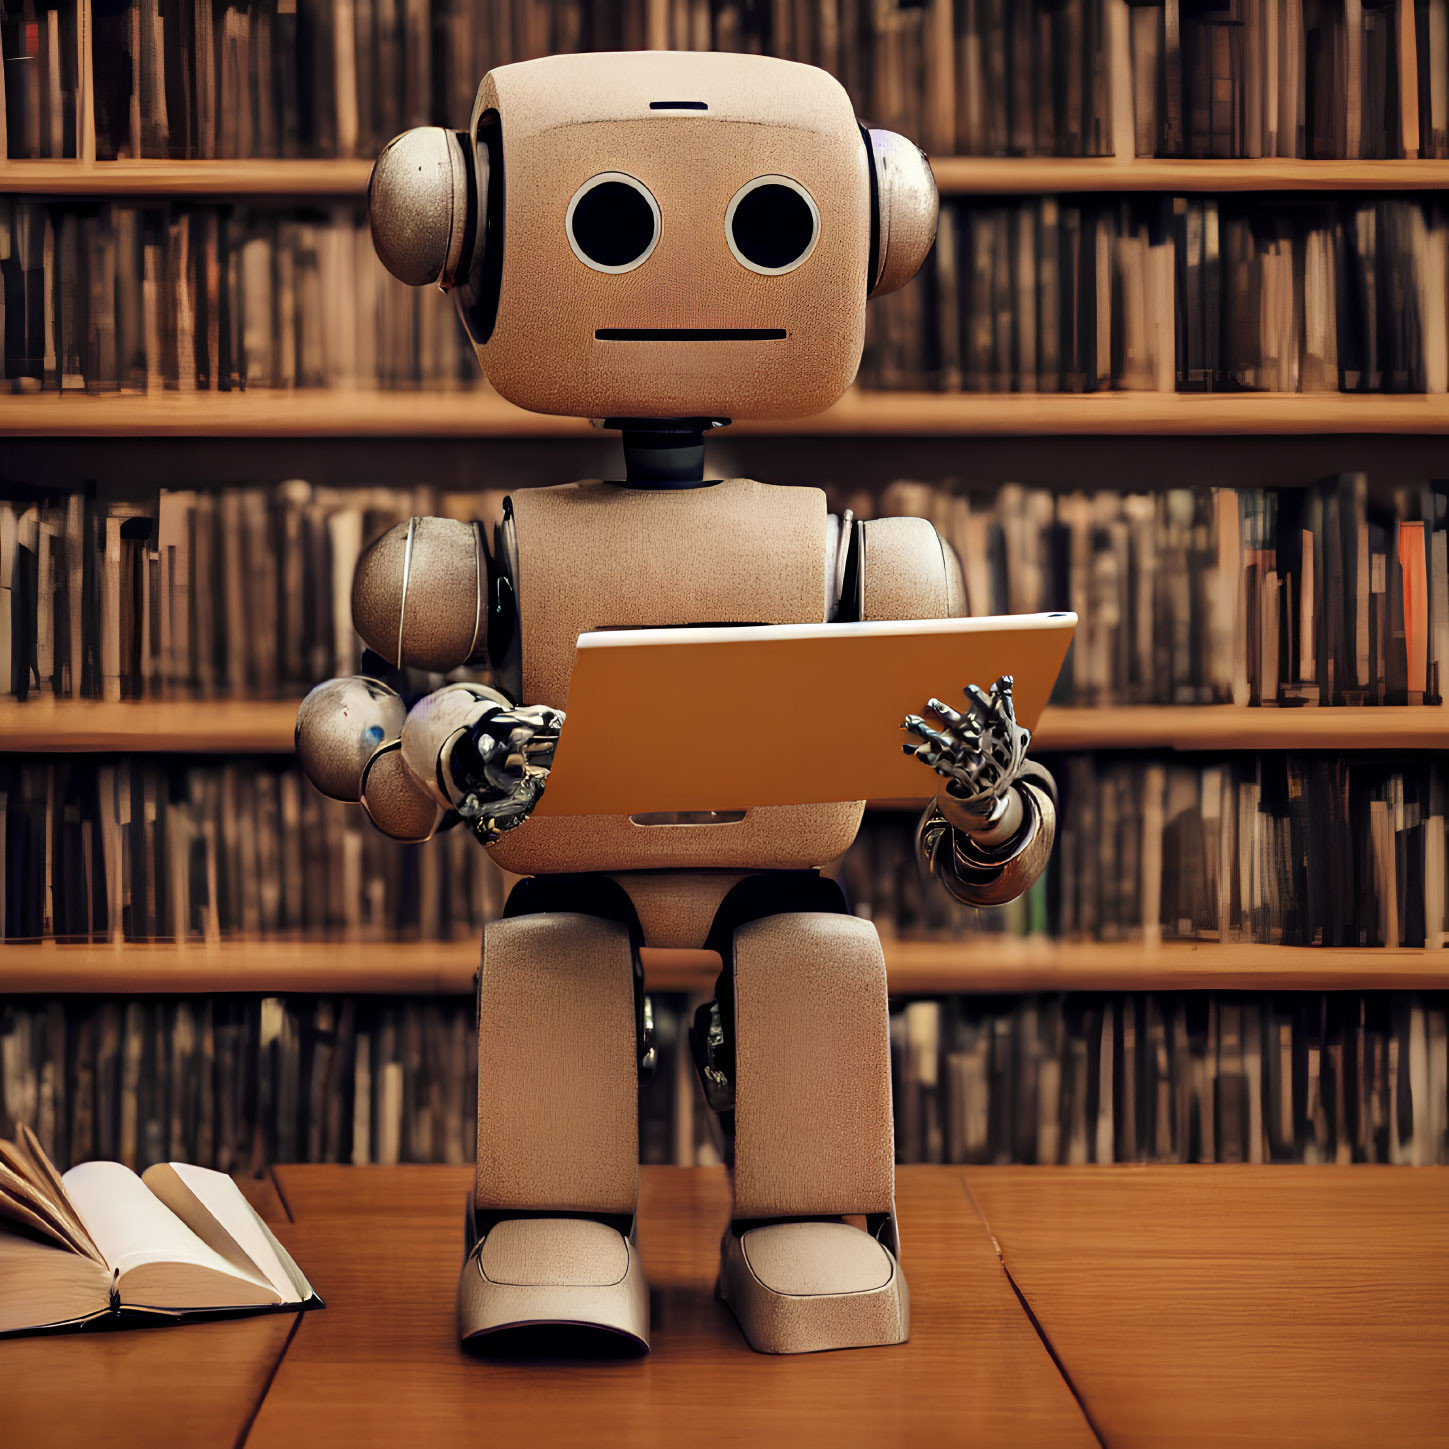 Humanoid robot holding tablet in front of bookshelf full of books